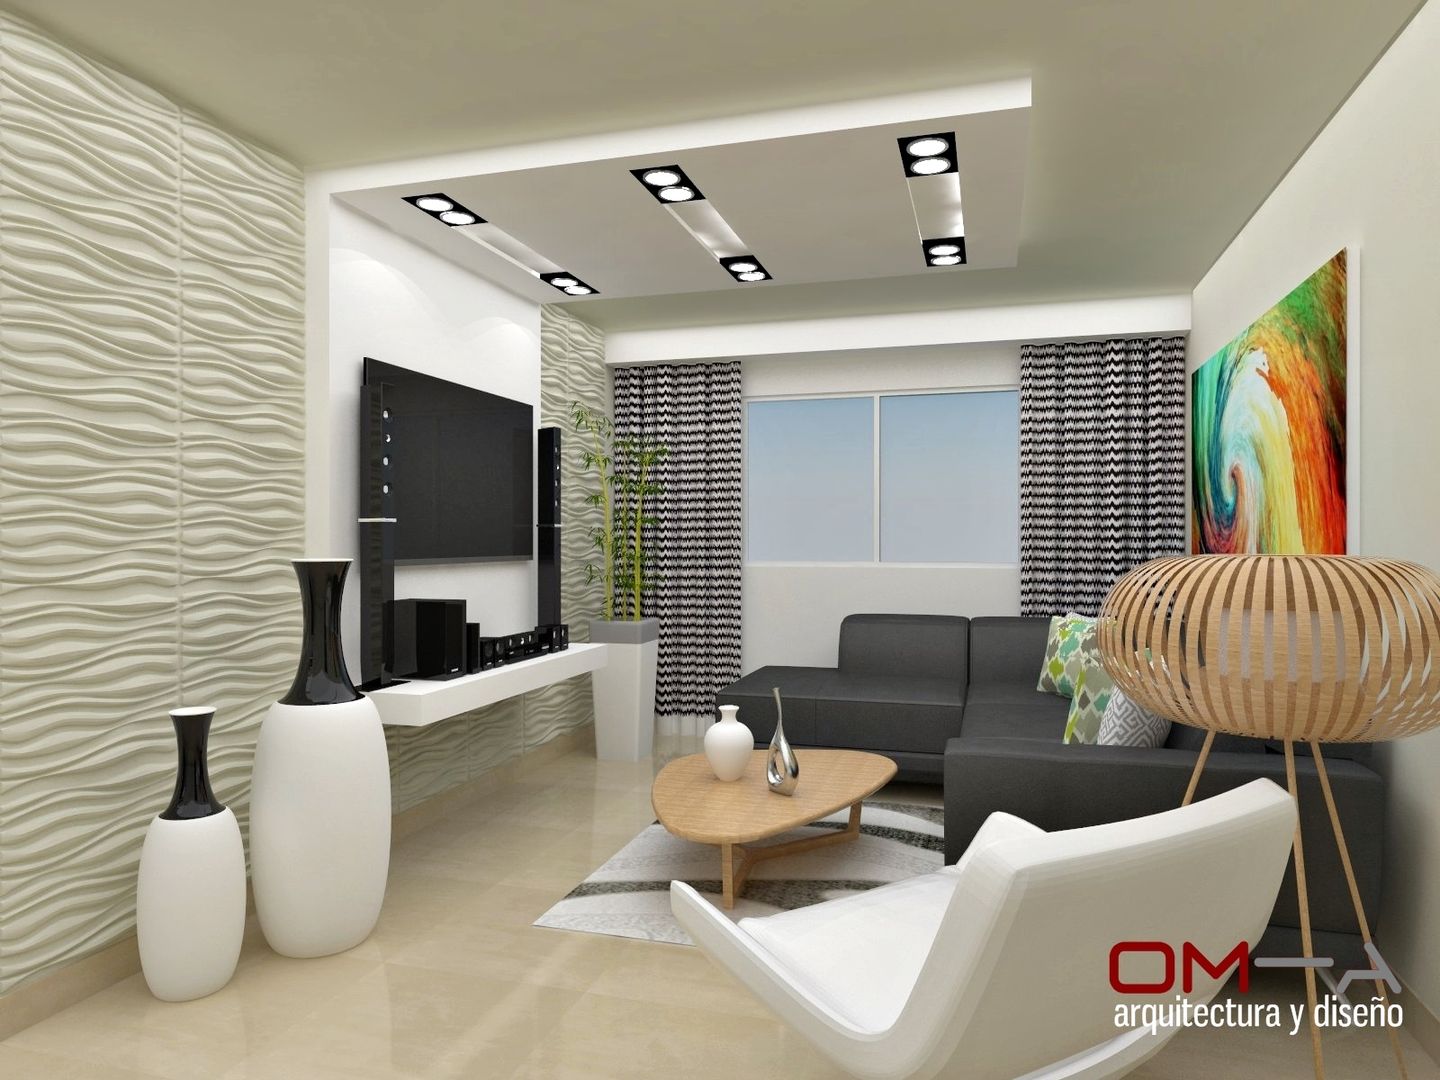 Diseño interior en apartamento , om-a arquitectura y diseño om-a arquitectura y diseño 모던스타일 거실